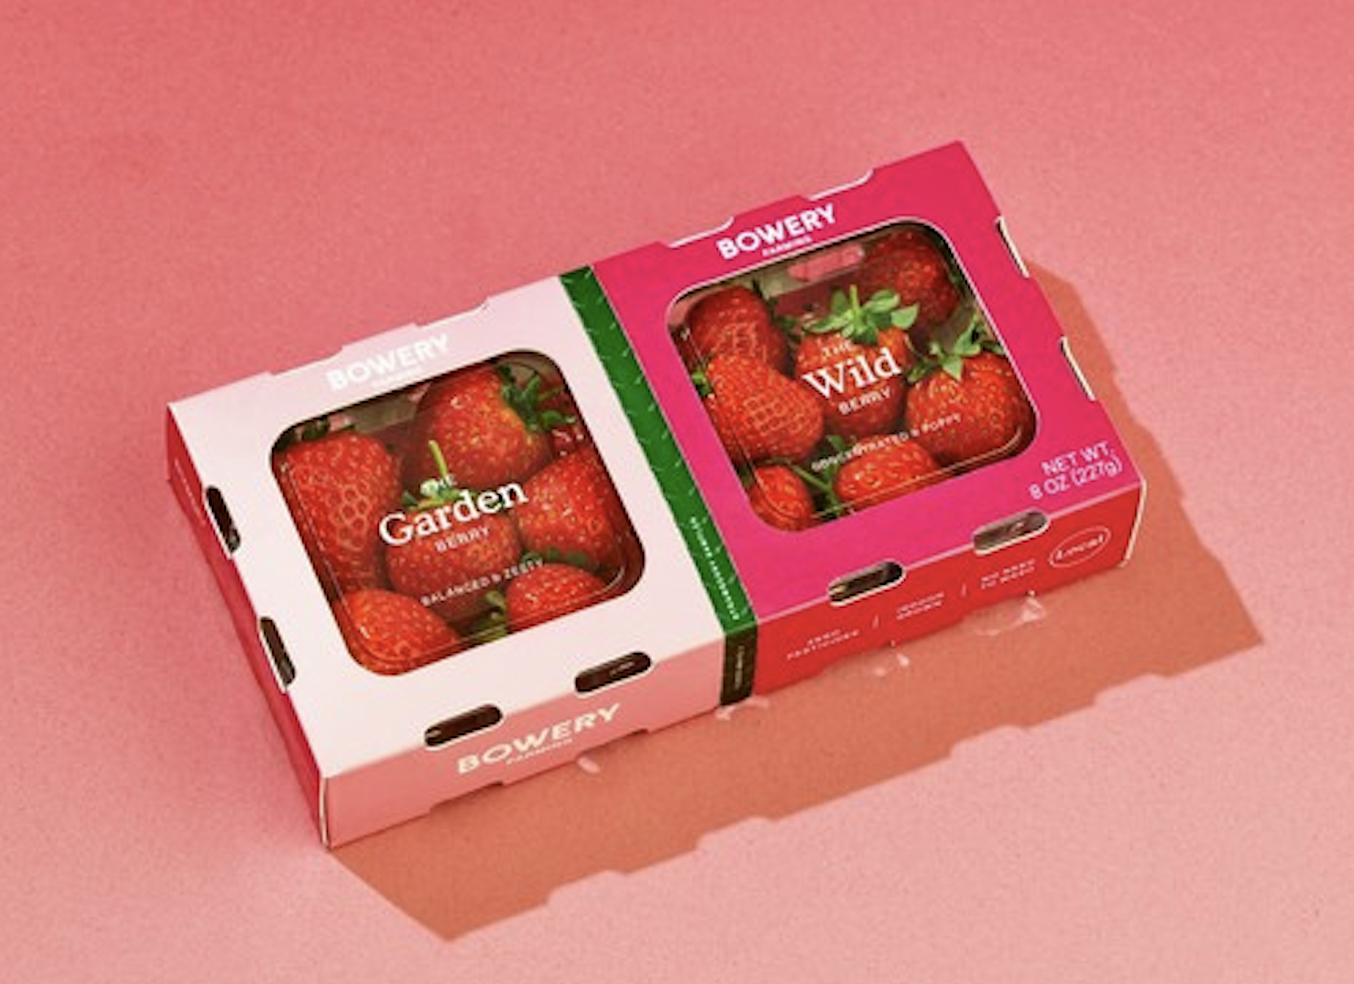 1647355196 299 Bowery verkauft vertikal gezuechtete Erdbeeren in begrenzten Mengen – TechCrunch